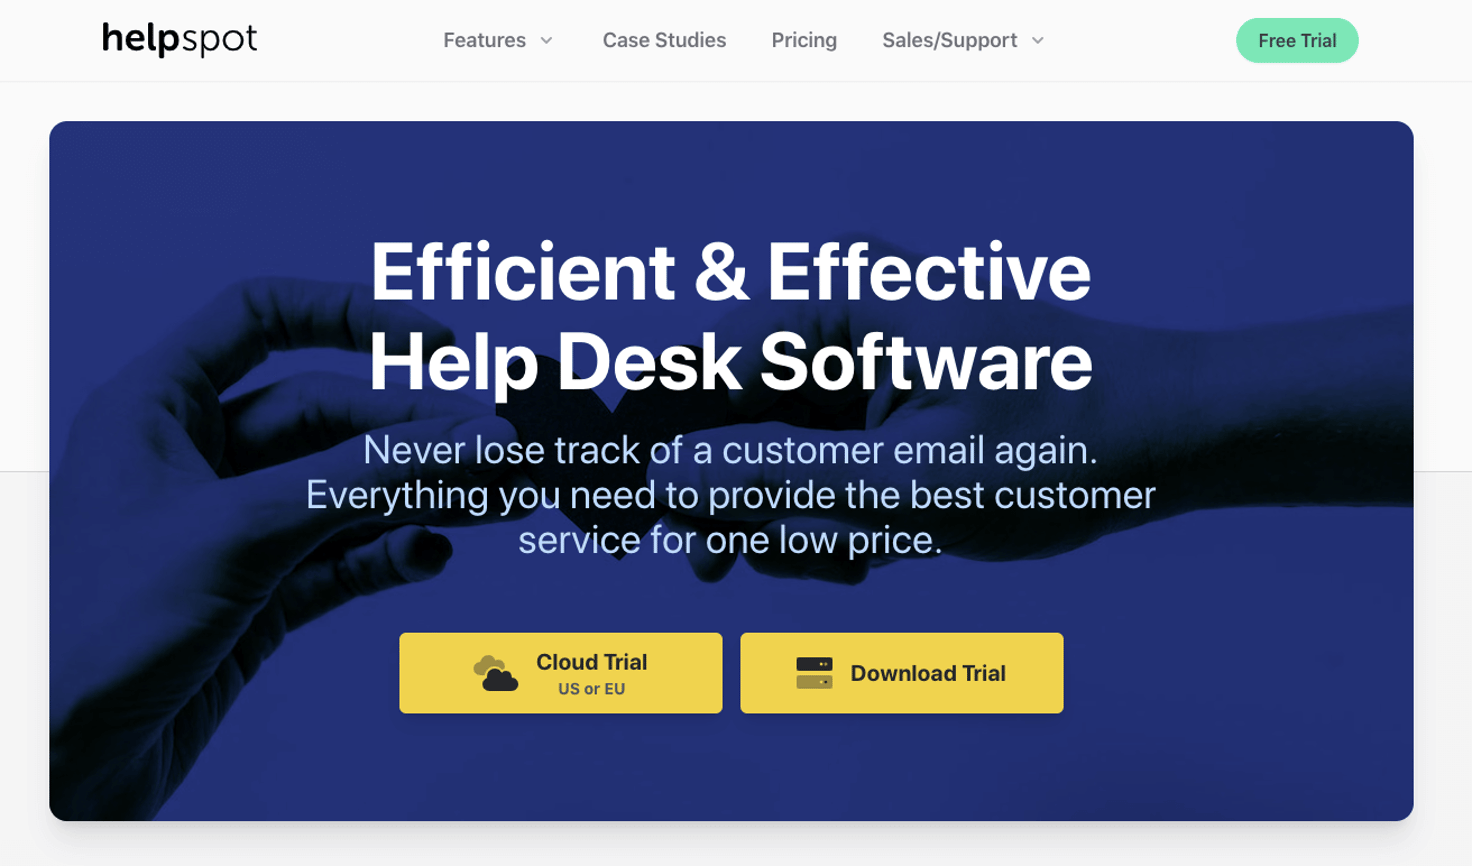 HelpSpot homepage: Efficient & Effective Help Desk Software